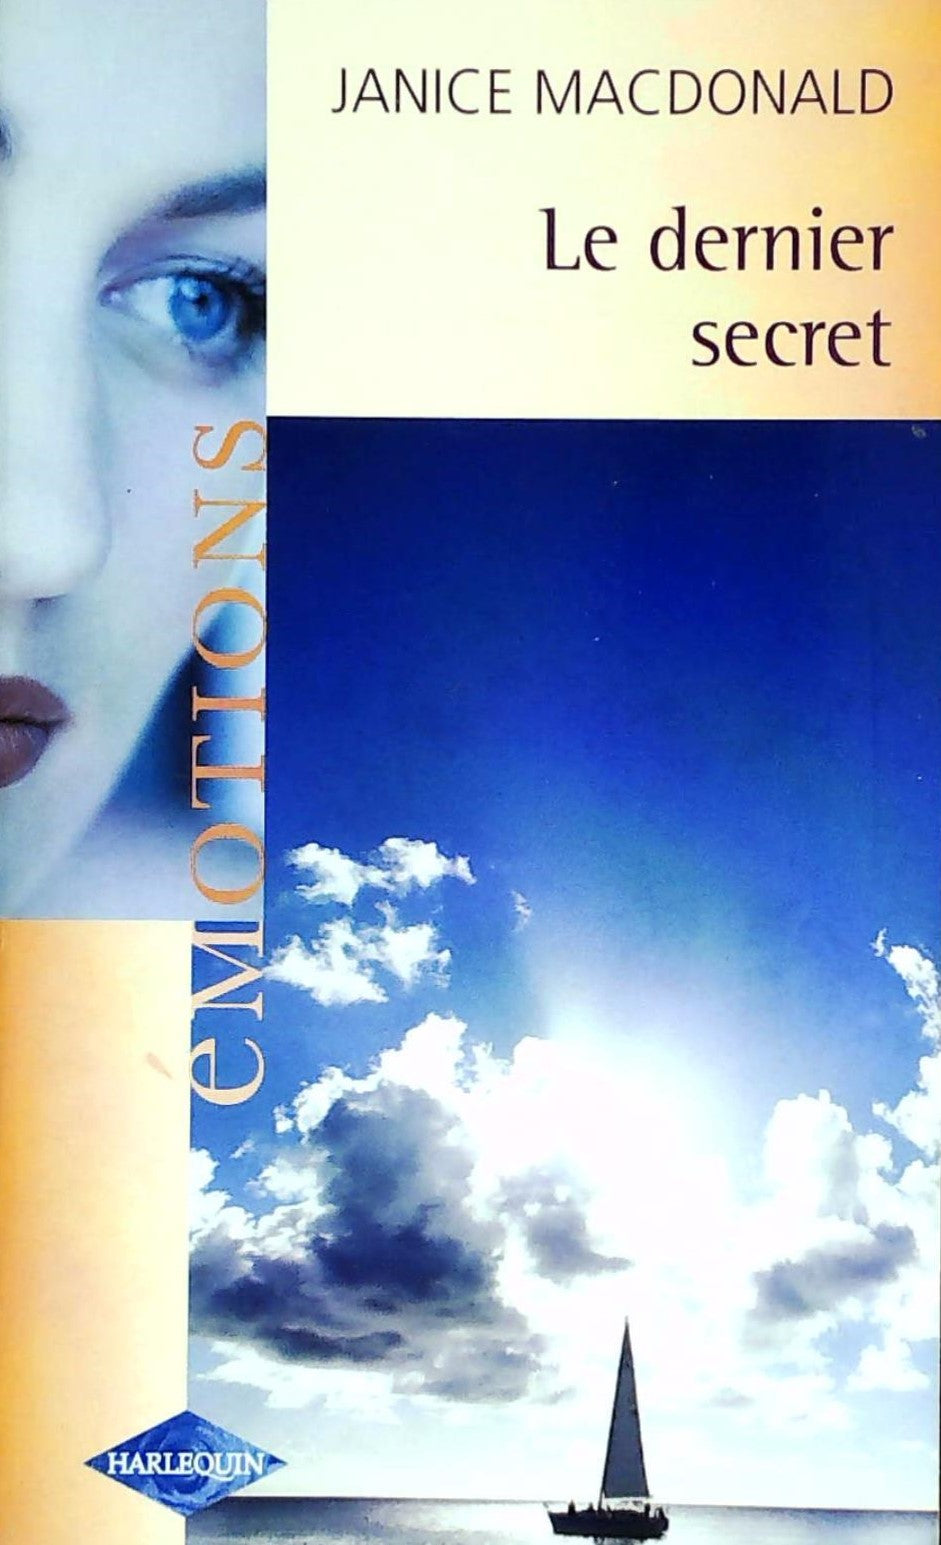 Livre ISBN 0373420692 Émotions (Harlequin) # 567 : Le dernier secret (Janice Macdonald)